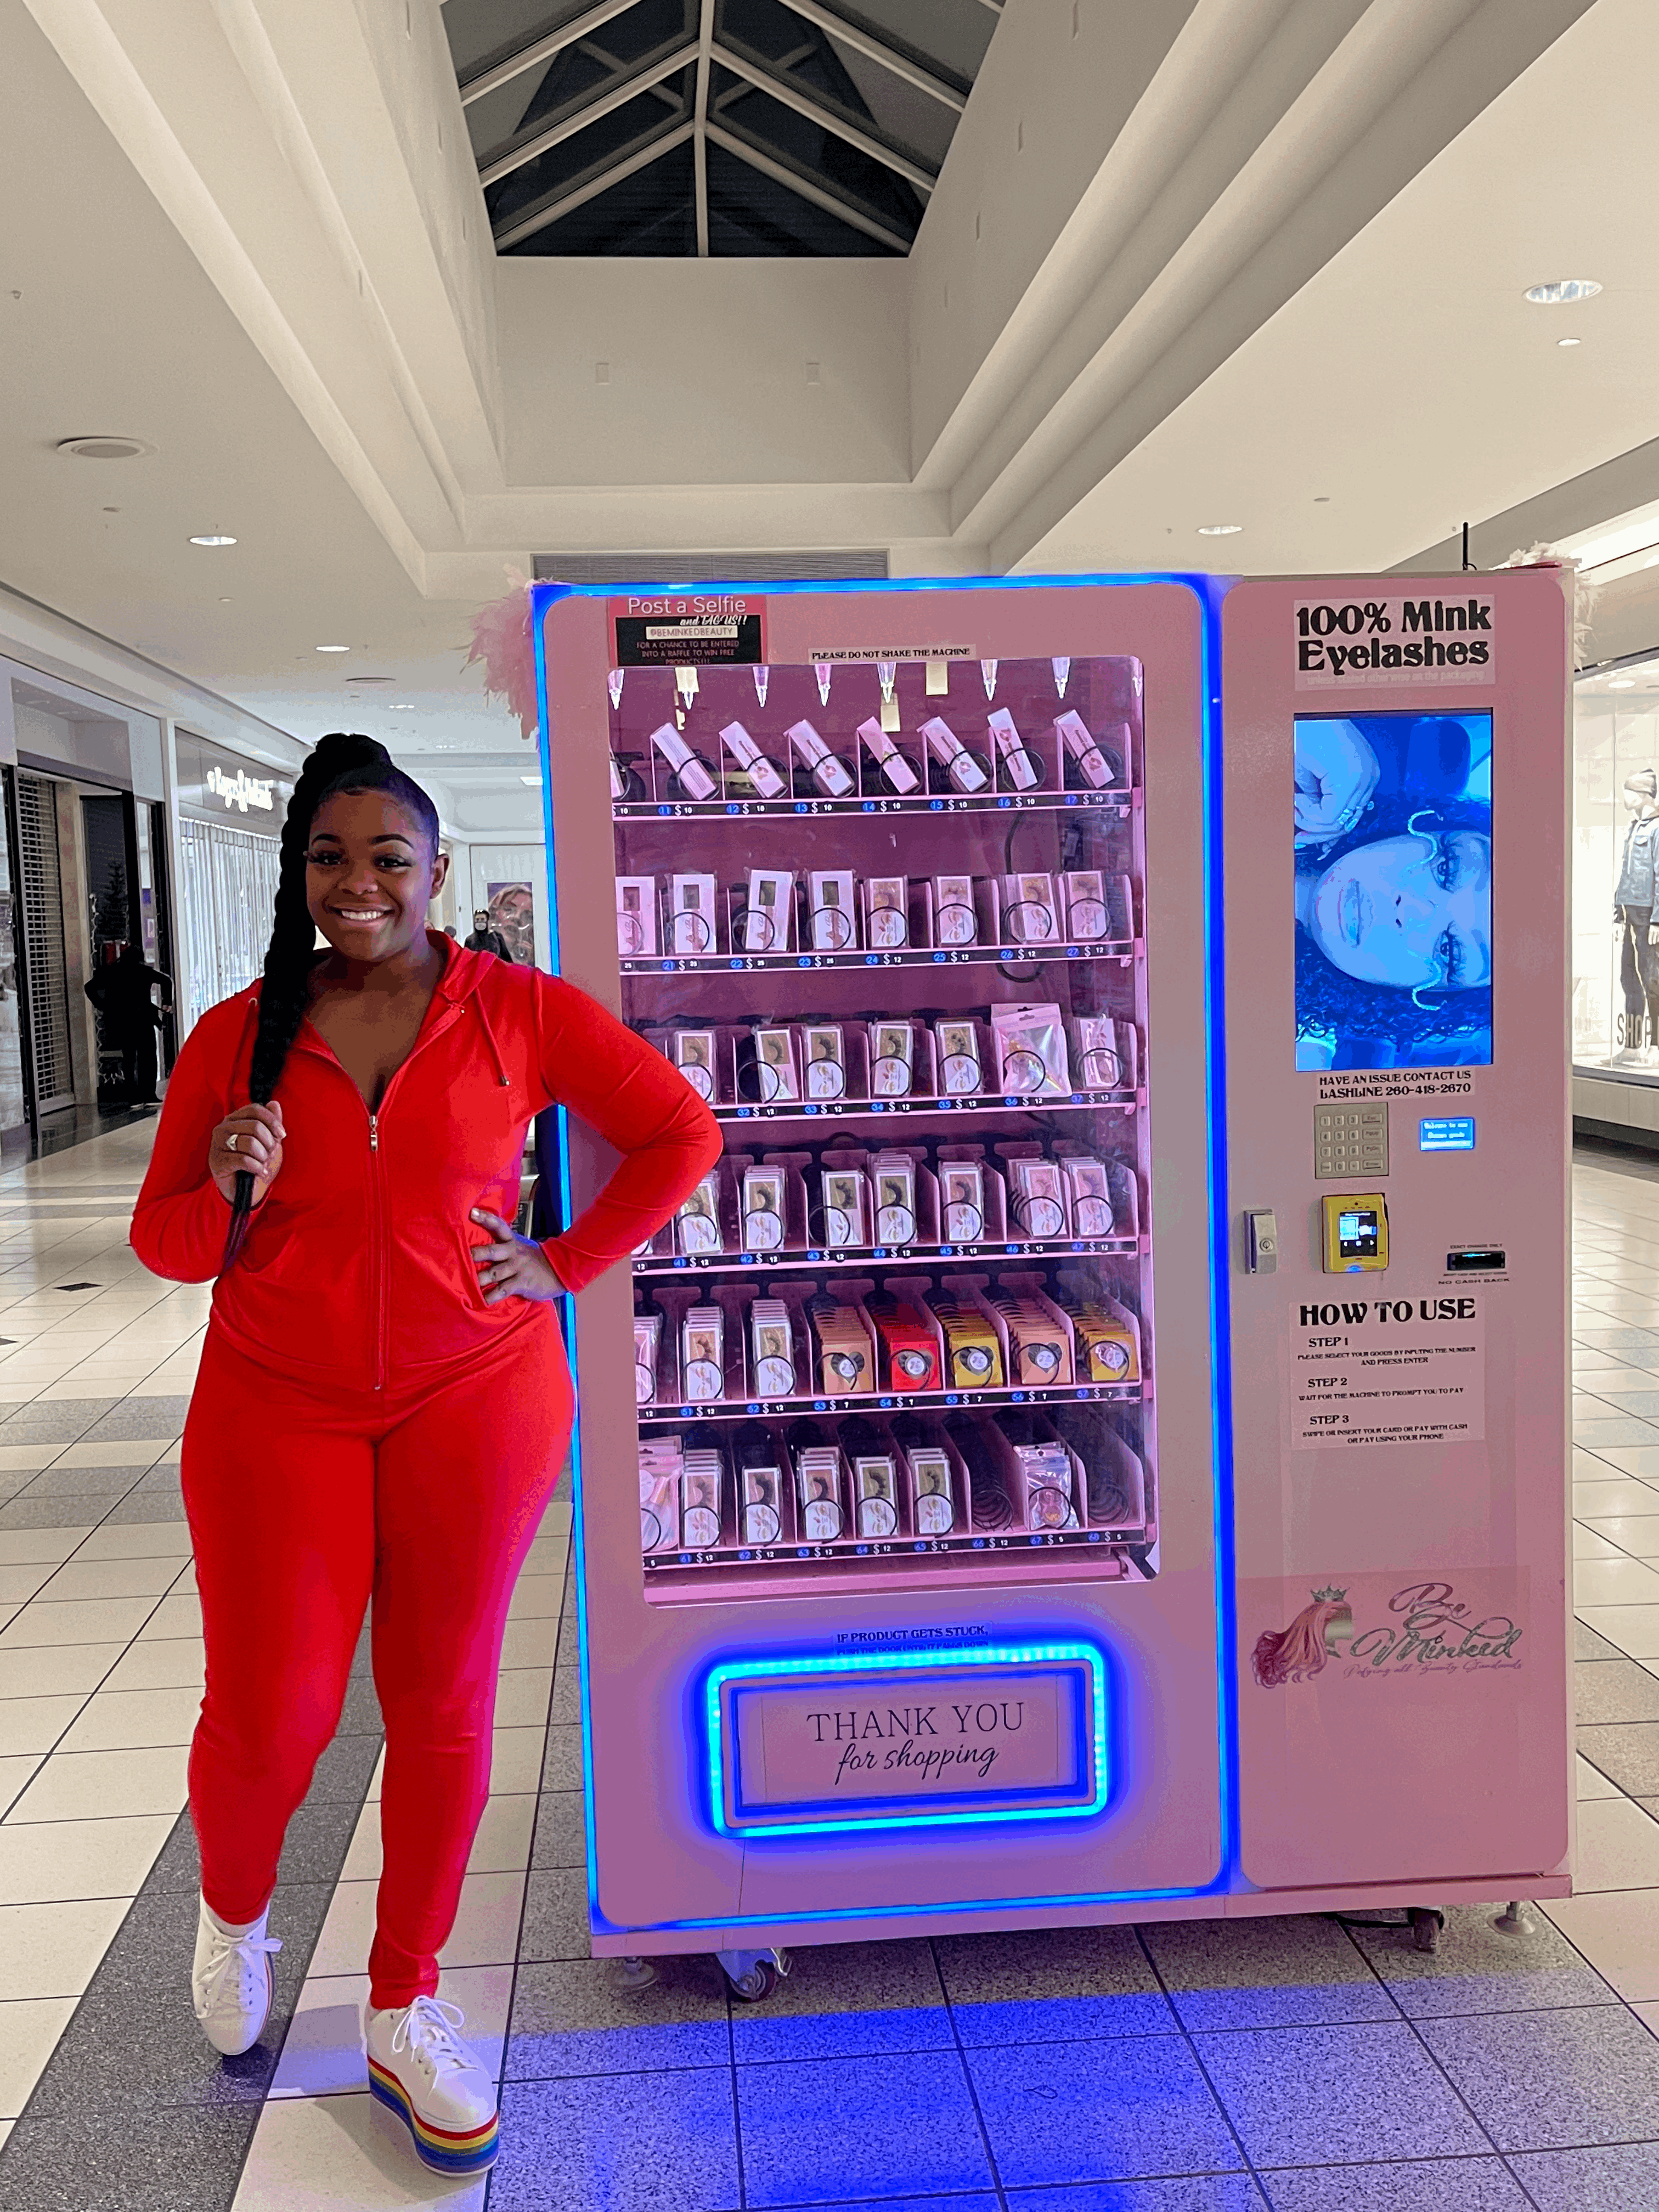 Beauty Vending Machine VENDOR + COACHING BUNDLE – Divine Designz